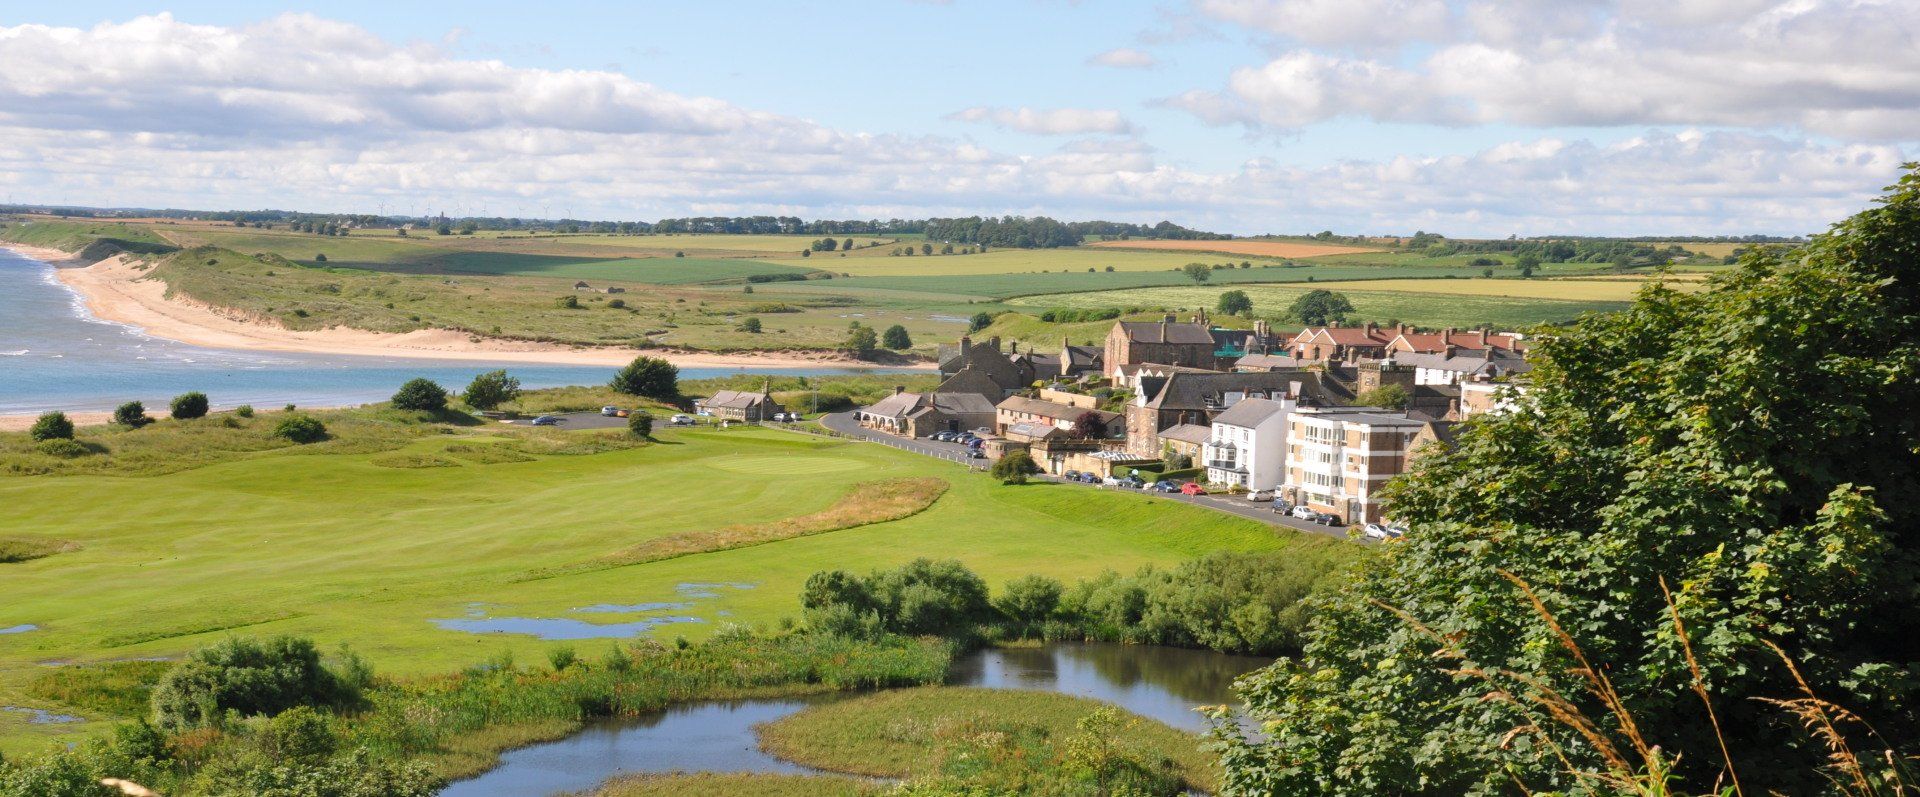 Alnmouth Village Golf Club viewed from Bracken Hill